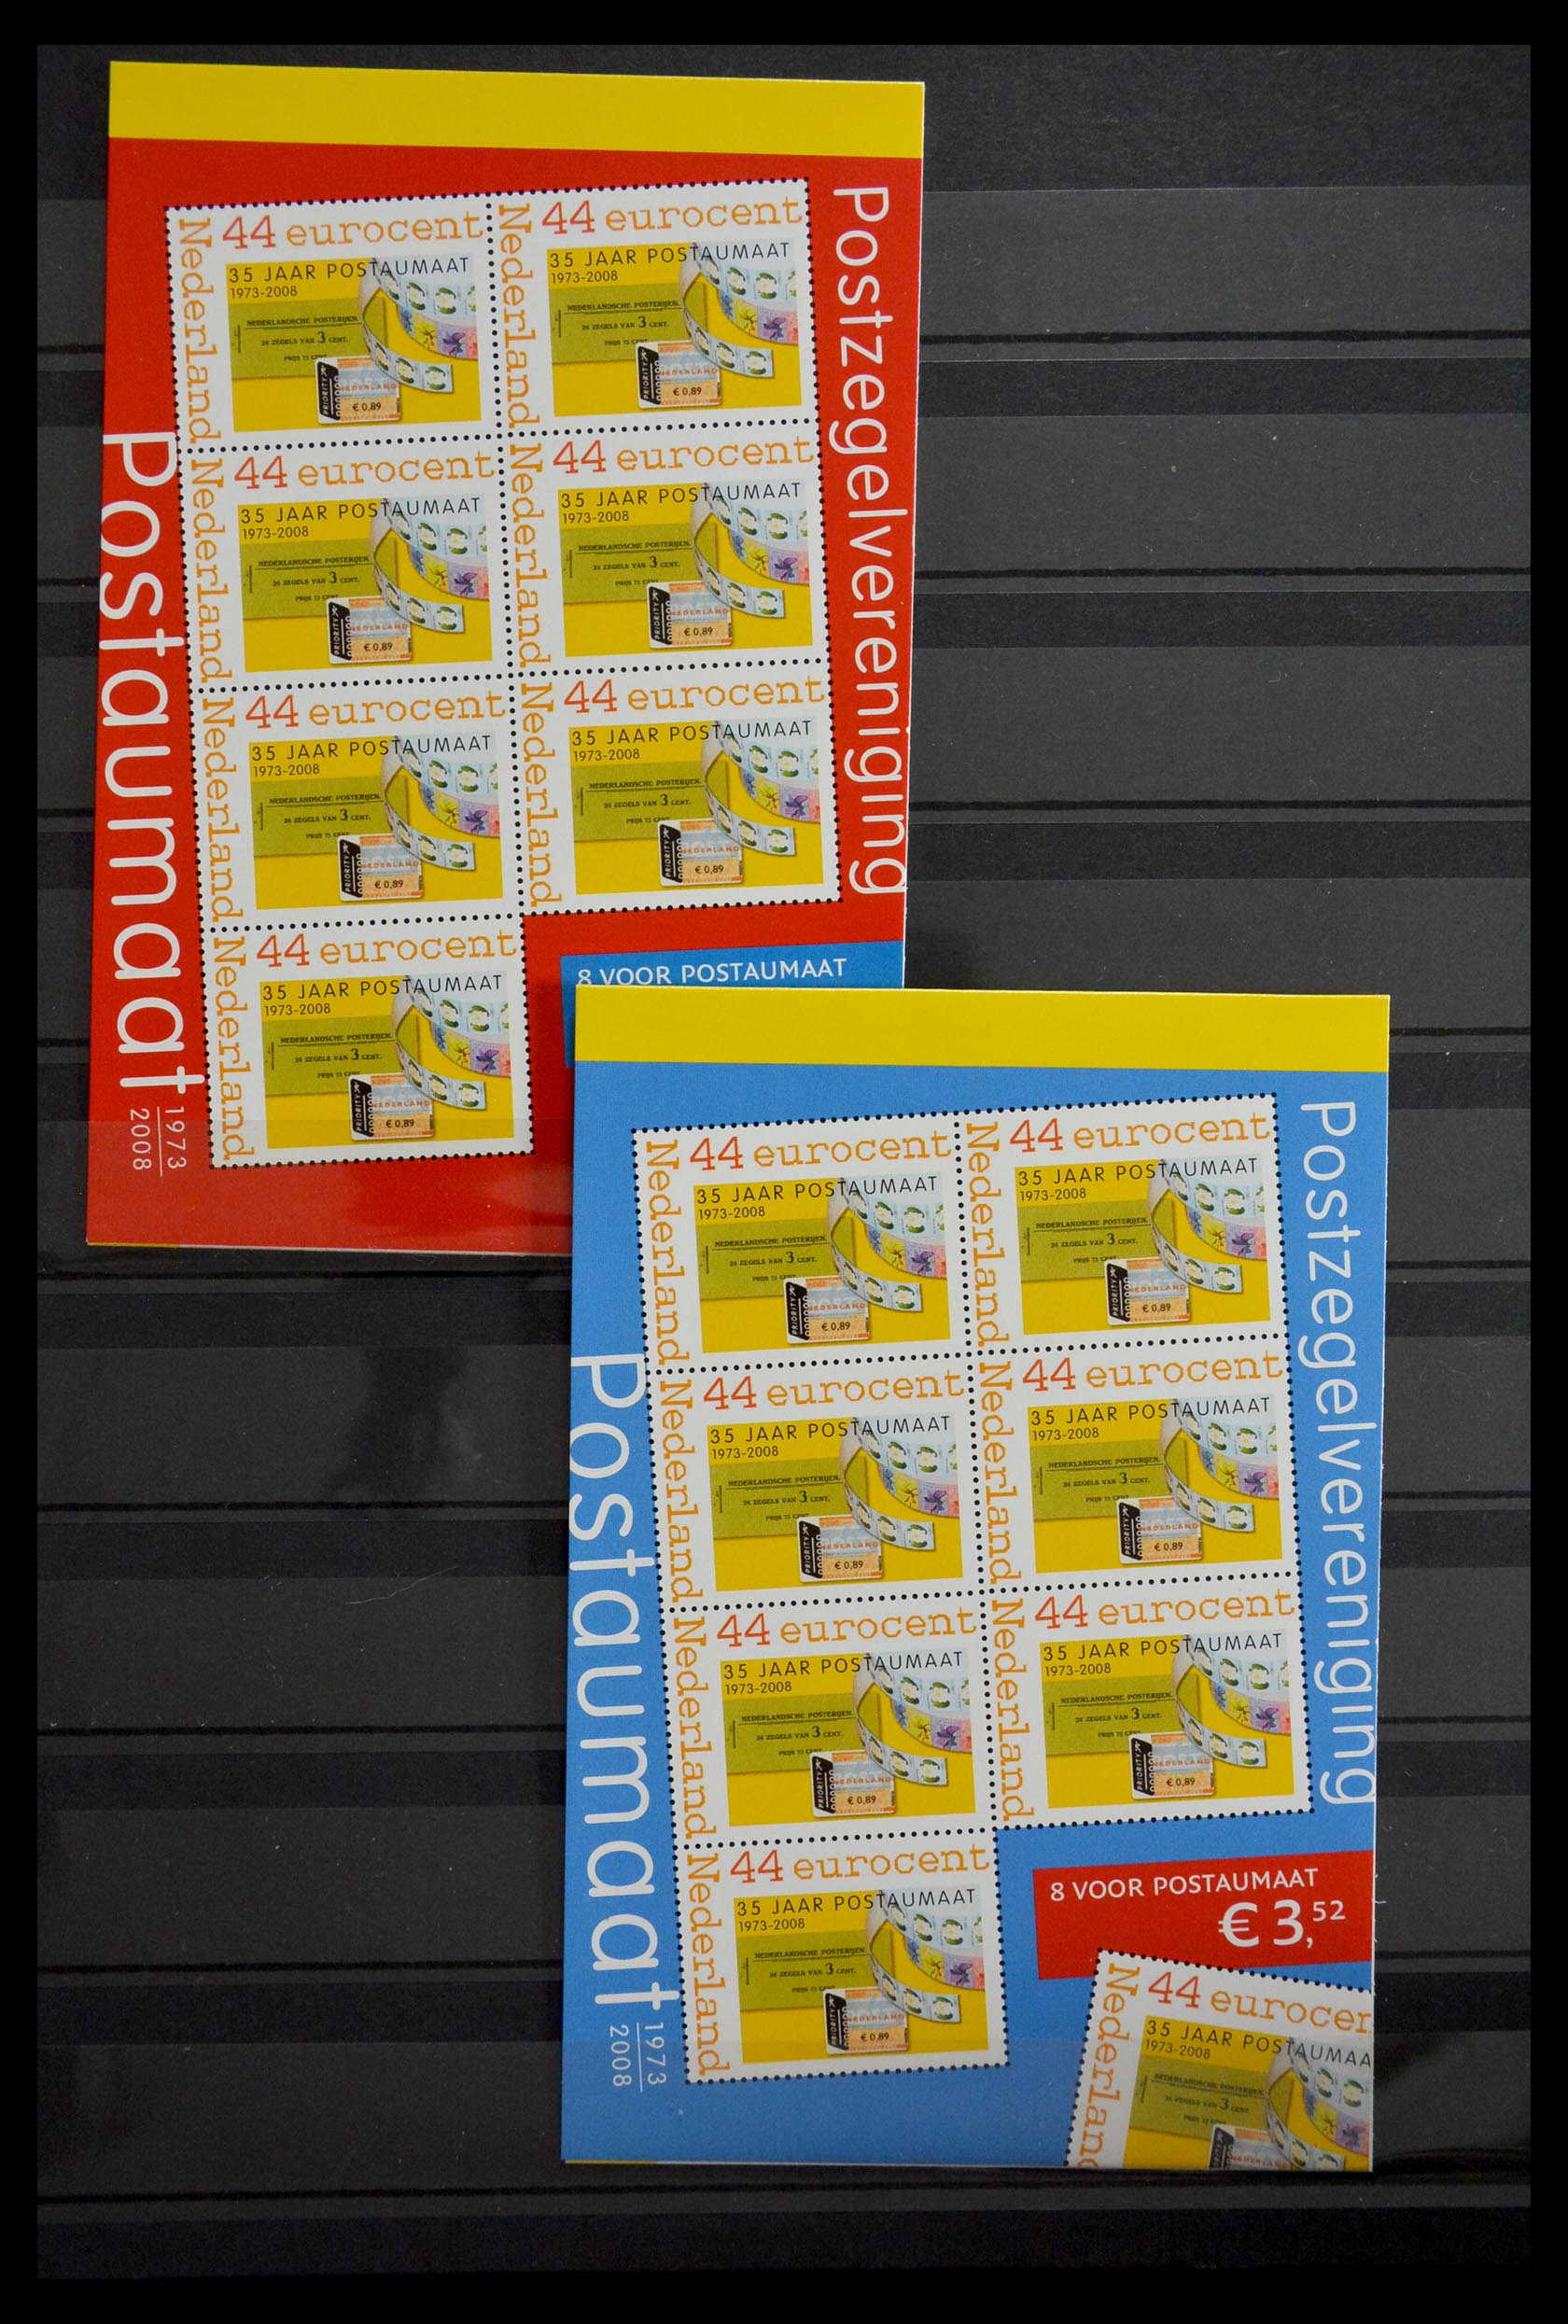 29387 052 - 29387 Netherlands stamp booklets 1964-2014.